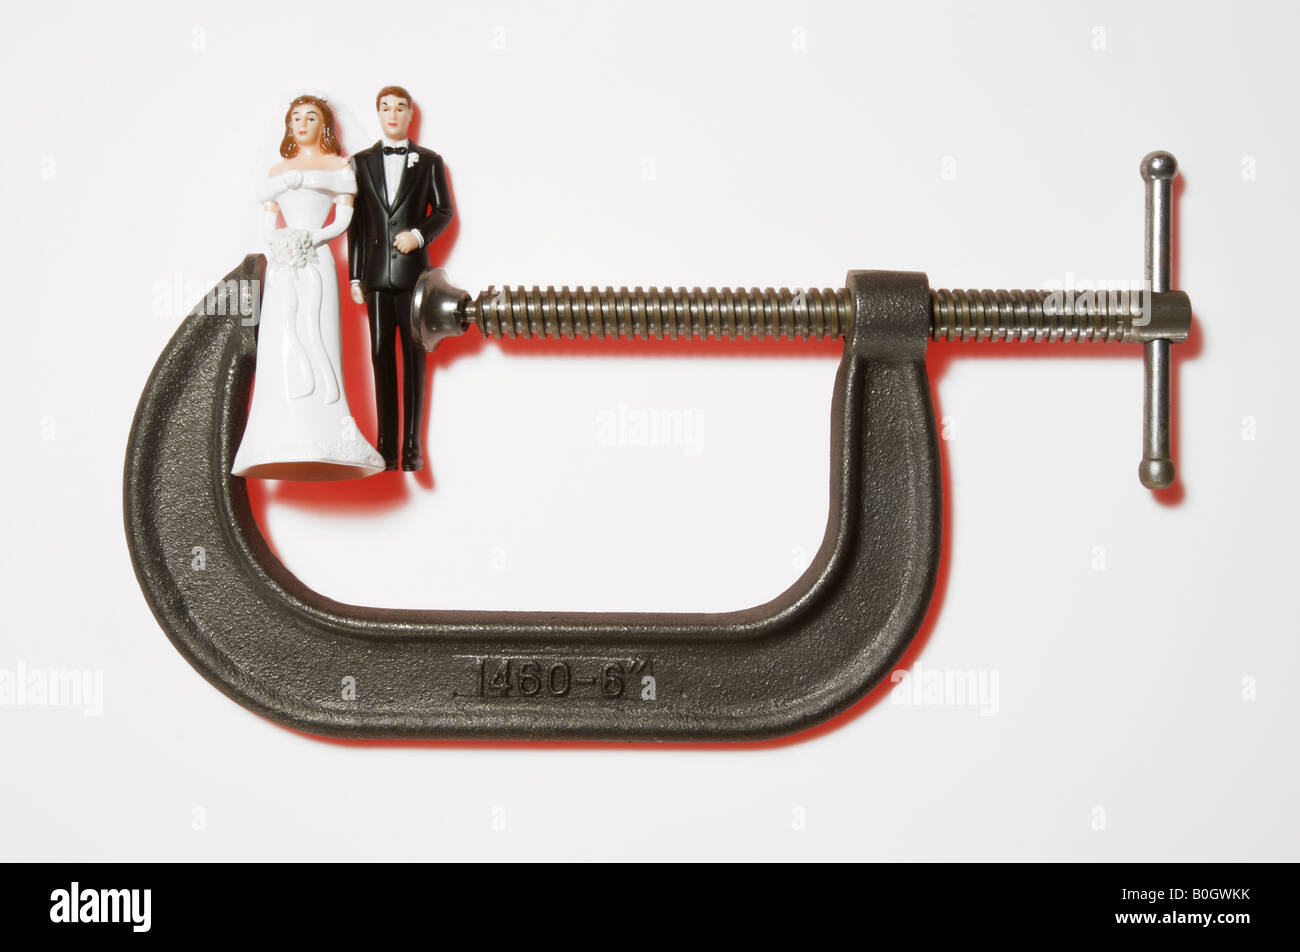 Figuras de boda en miniatura en una abrazadera metálica Foto de stock